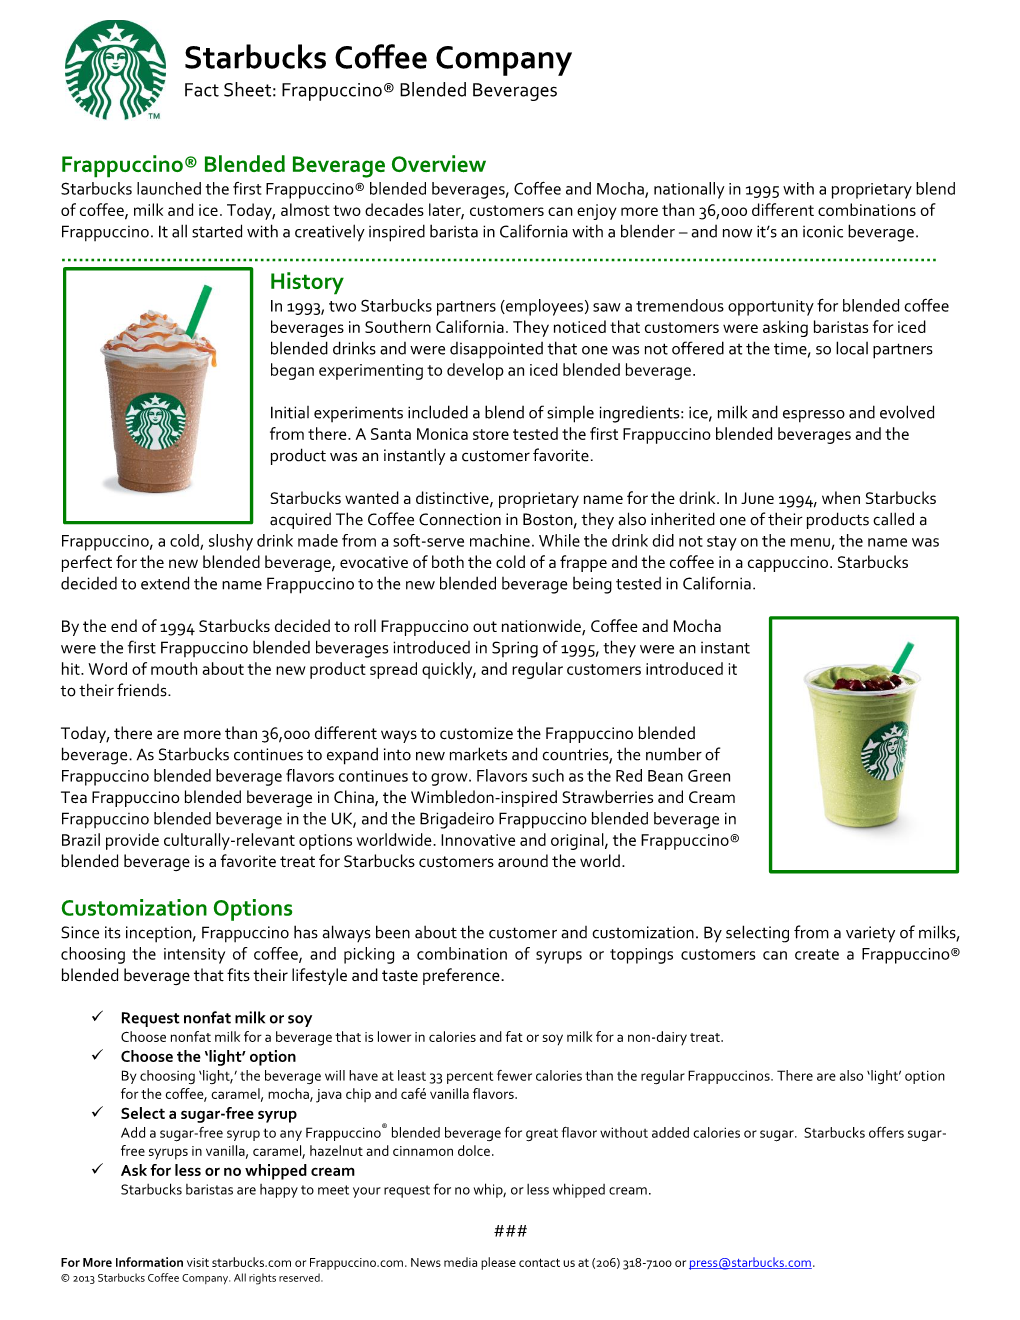 Frappuccino Fact Sheet